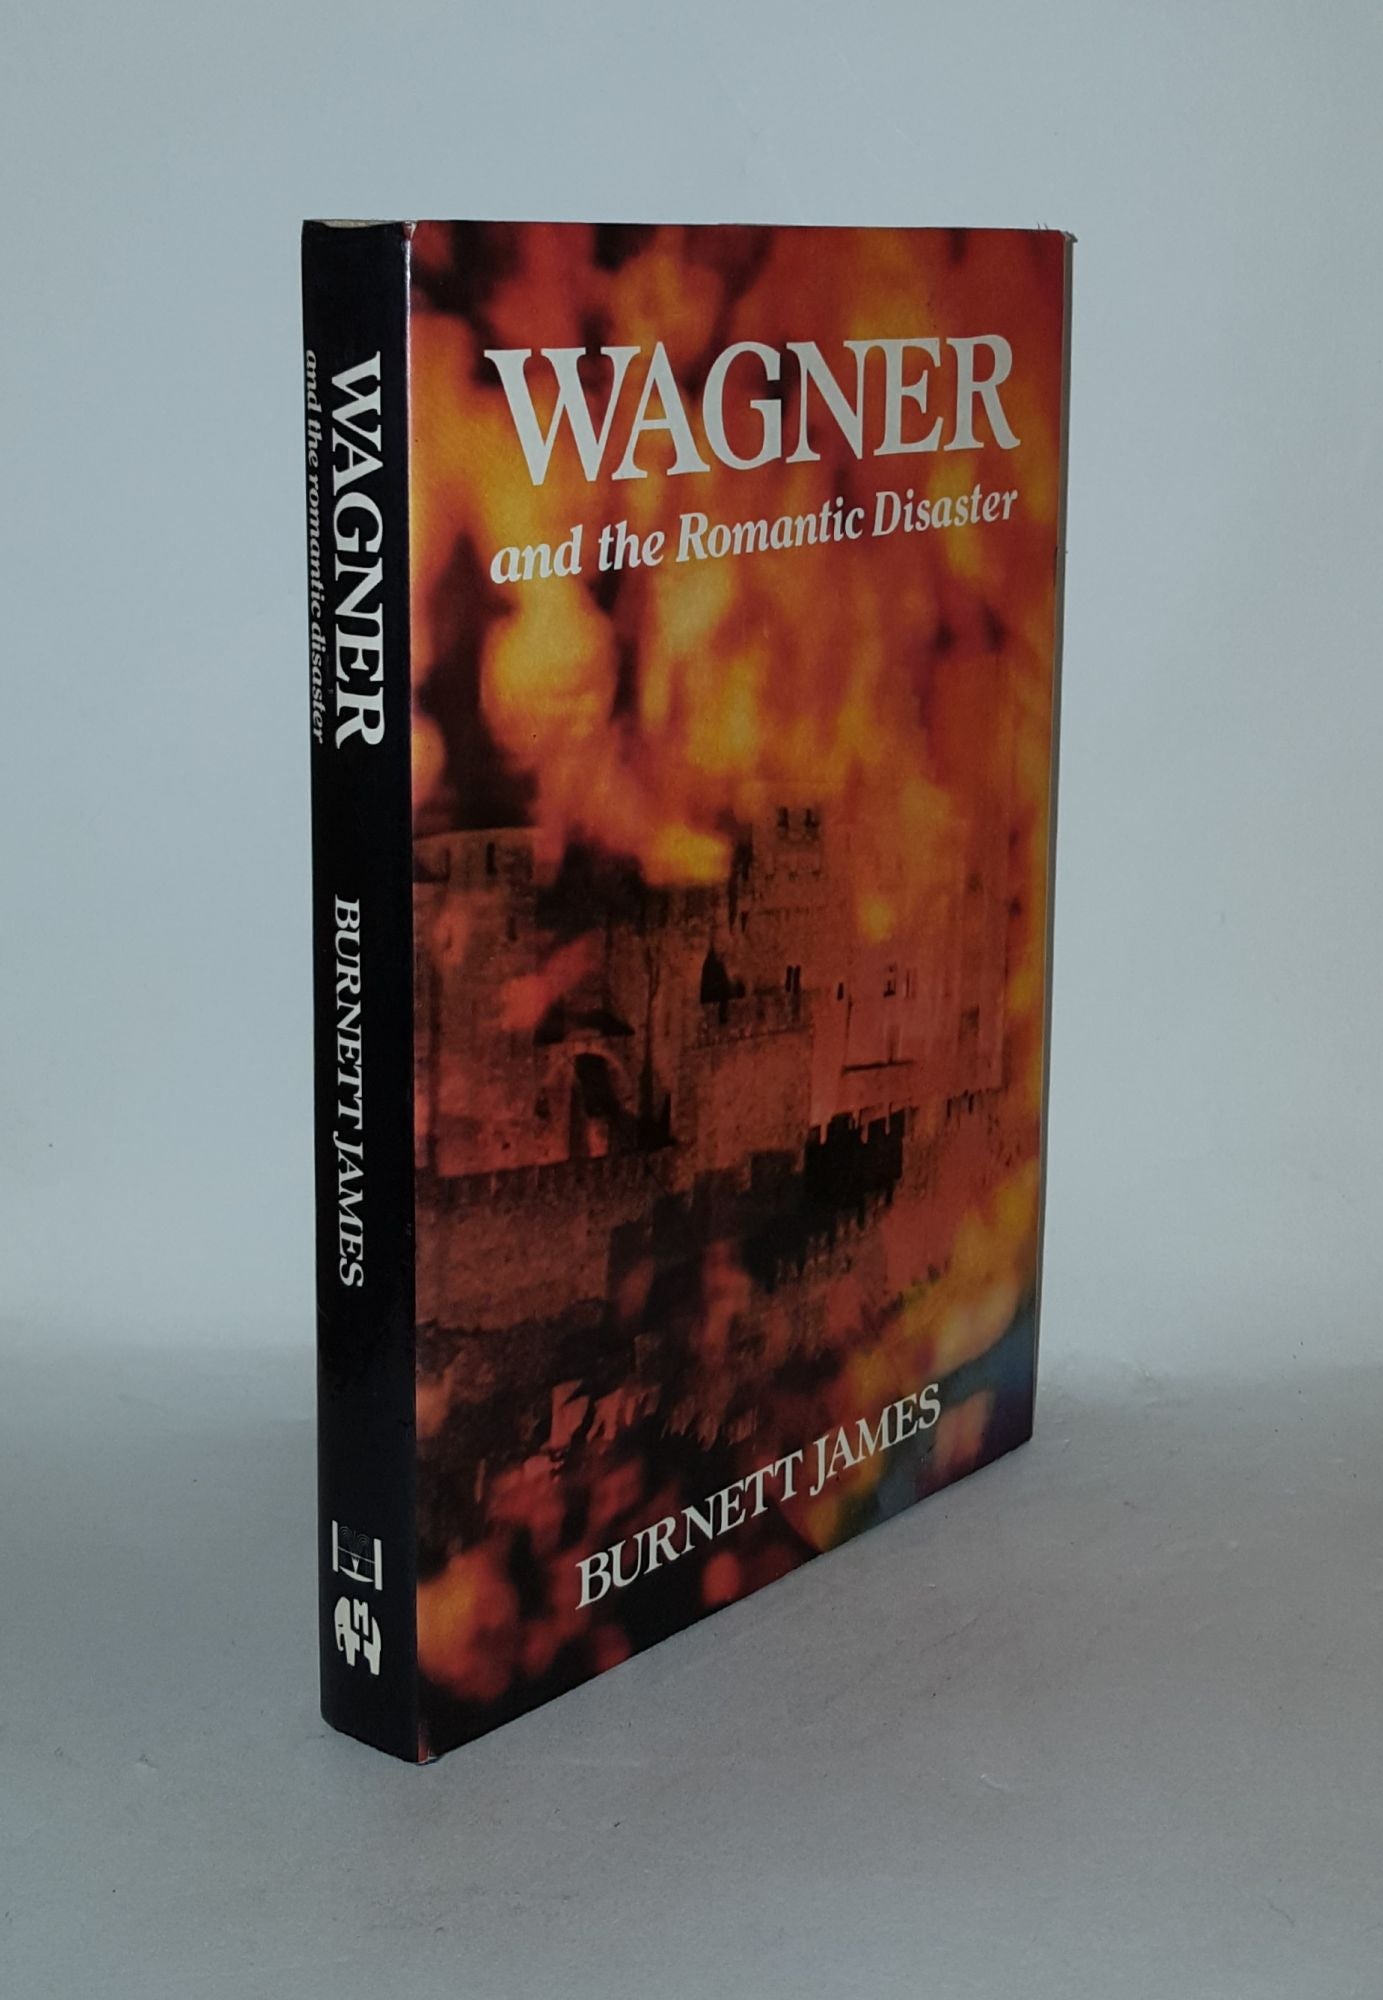 JAMES Burnett - Wagner and the Romantic Disaster